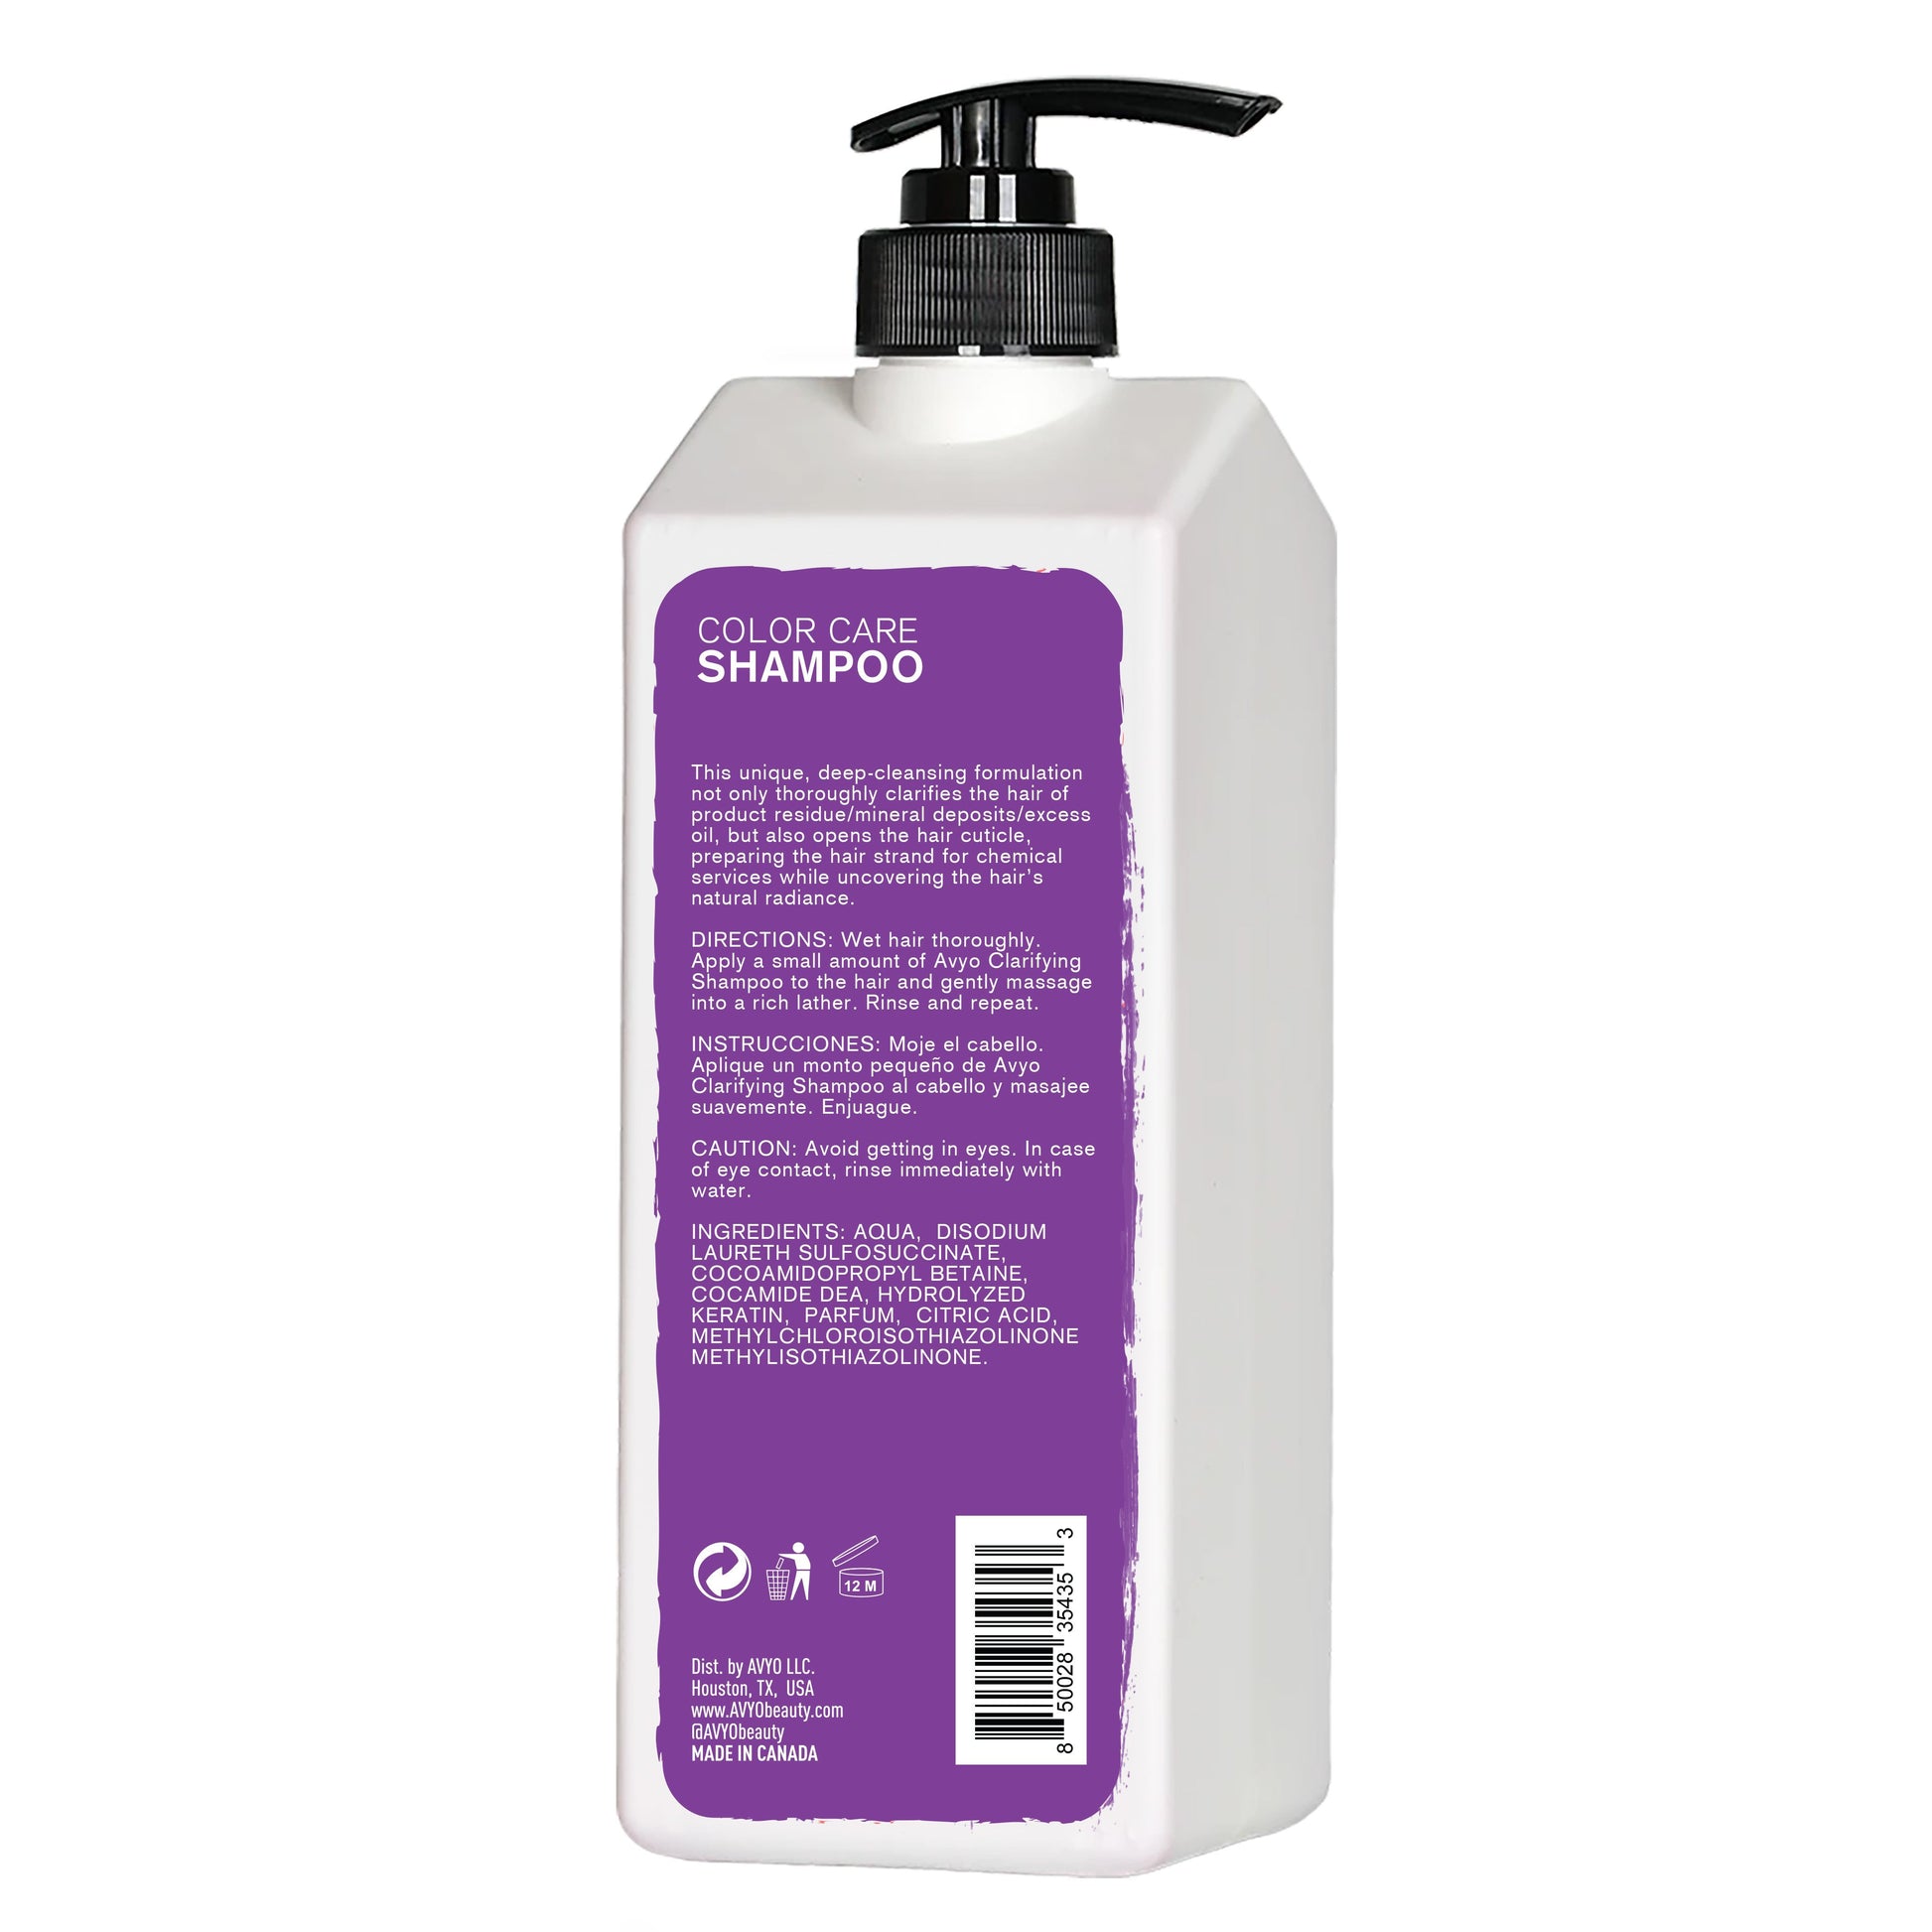 Clarifying Shampoo | AVYO SHAMPOO AVYO 